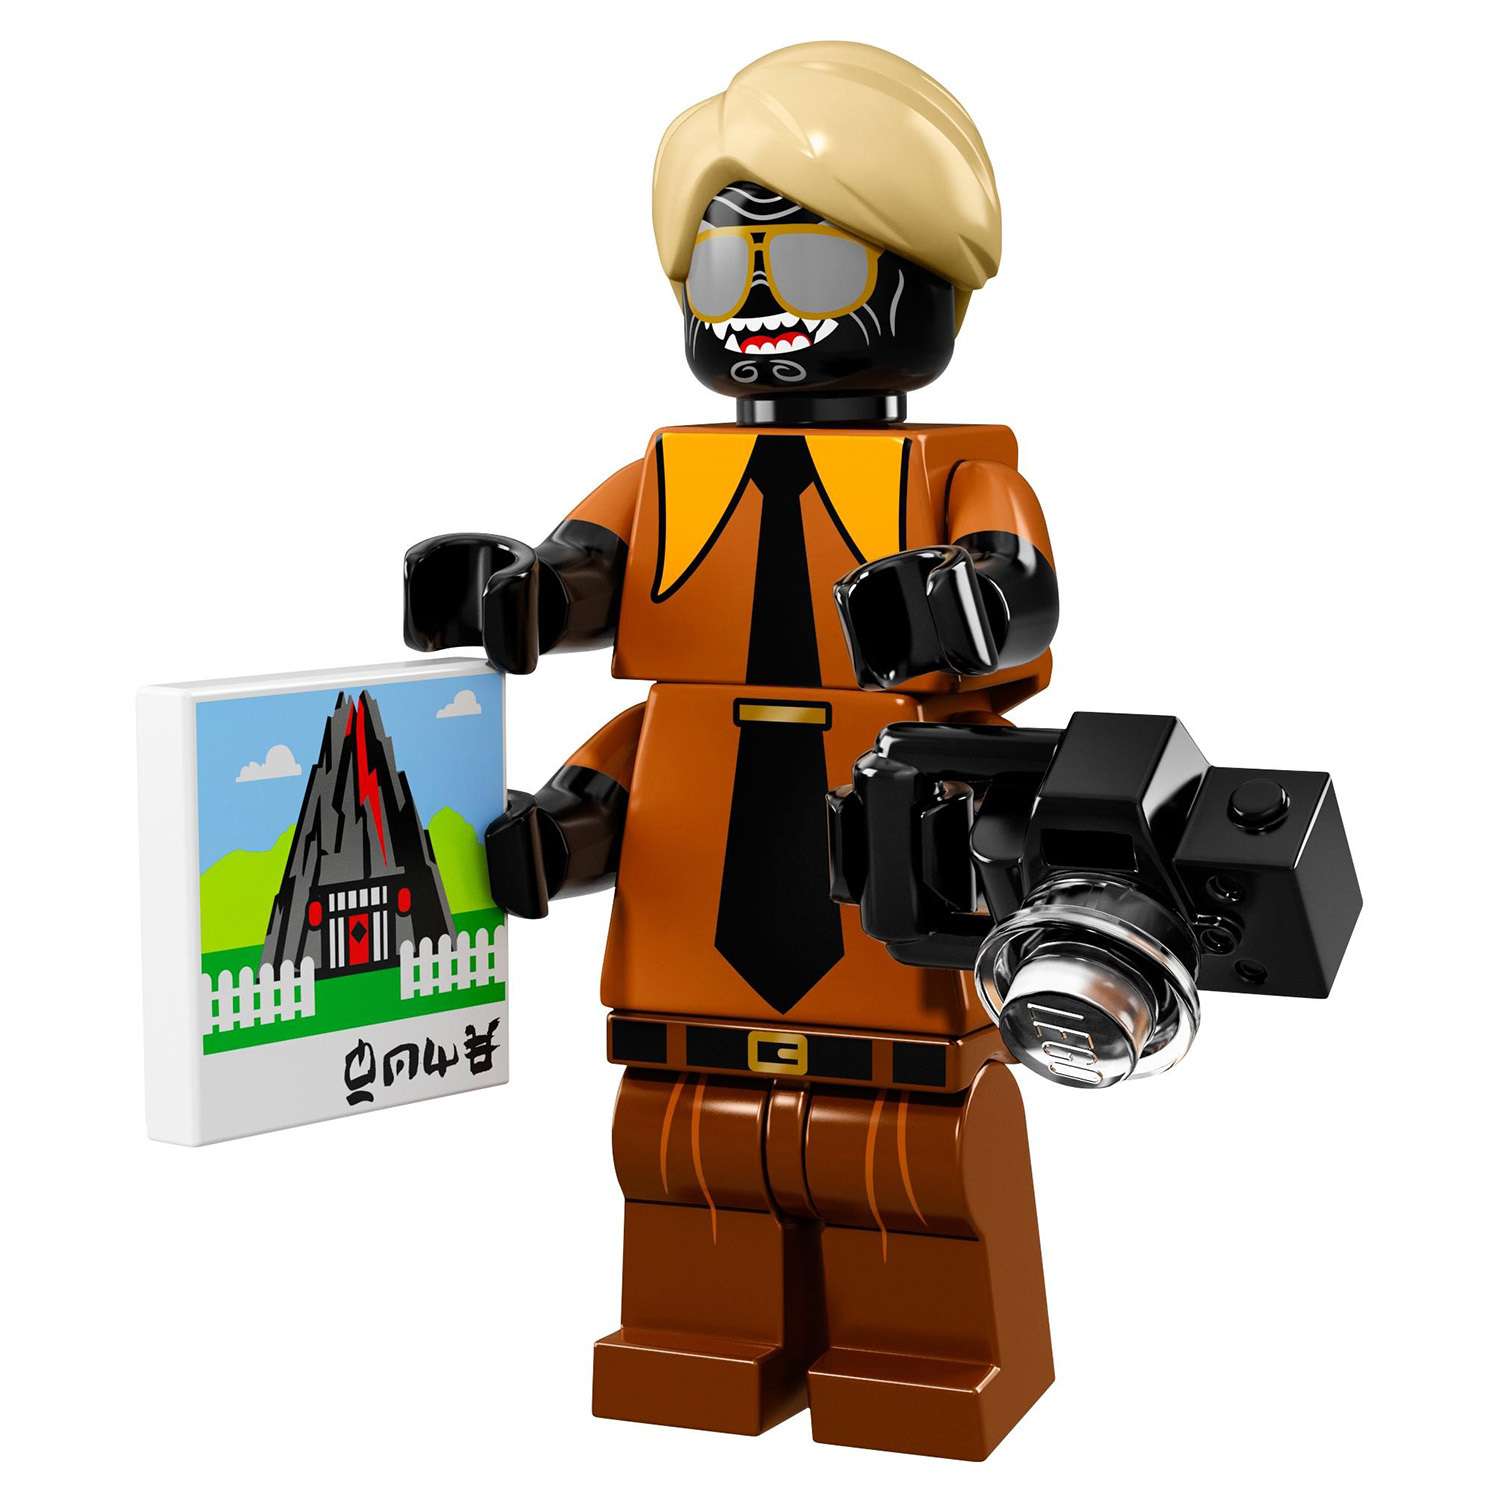 Конструктор LEGO Minifigures Минифигурки ФИЛЬМ: НИНДЗЯГО (71019) в ассортименте - фото 36